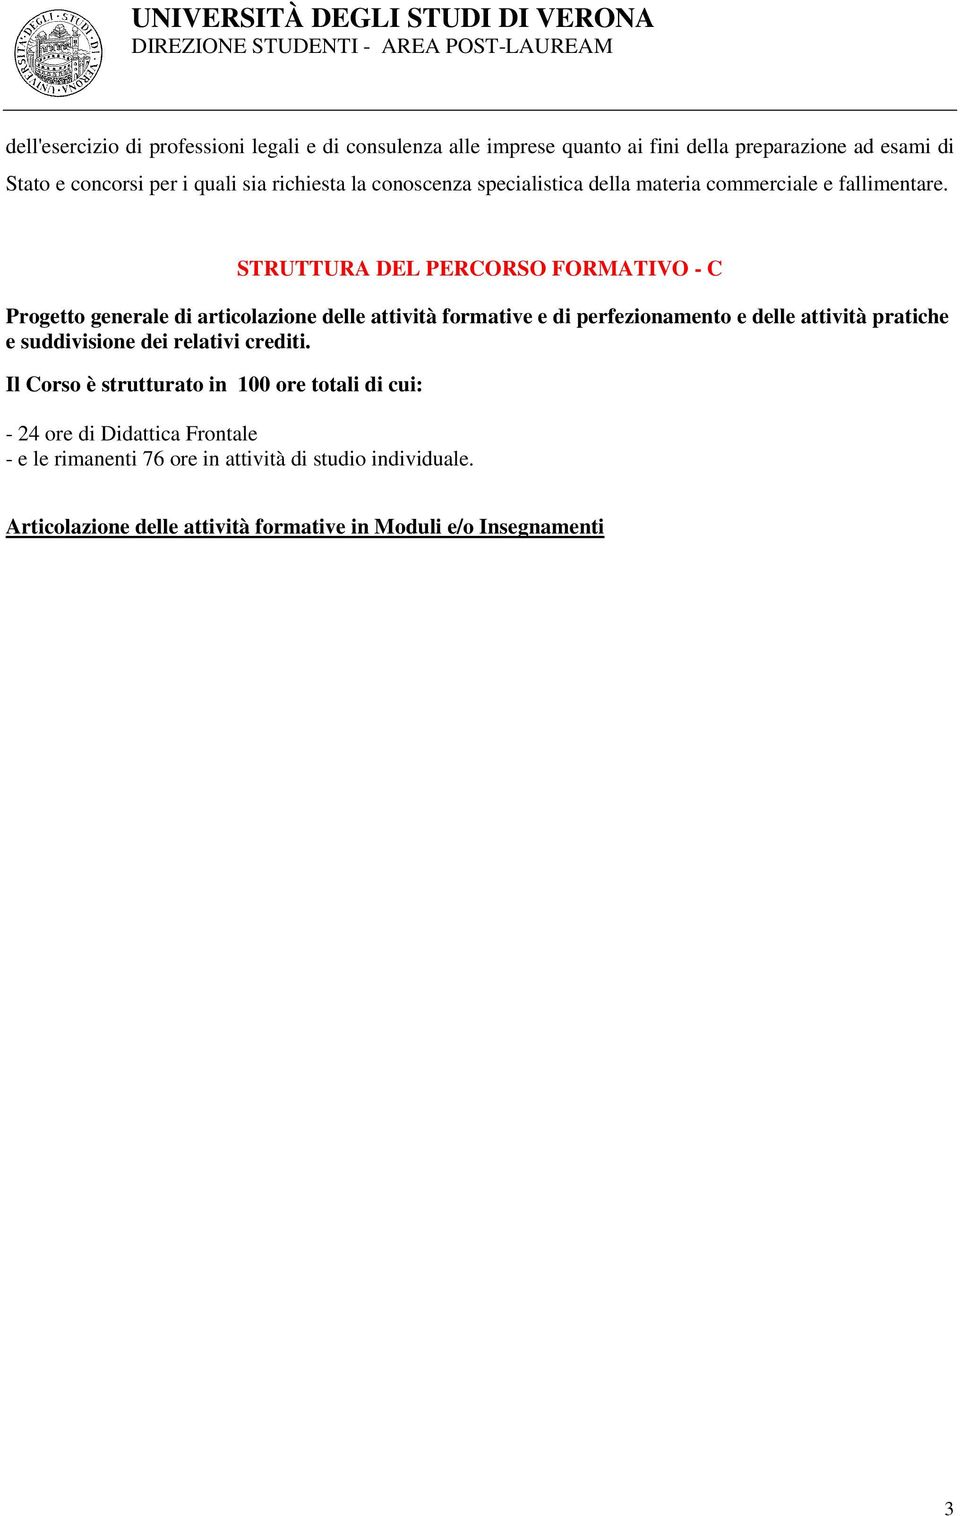 STRUTTURA DEL PERCORSO FORMATIVO - C Progetto generale di articolazione delle attività formative e di perfezionamento e delle attività pratiche e